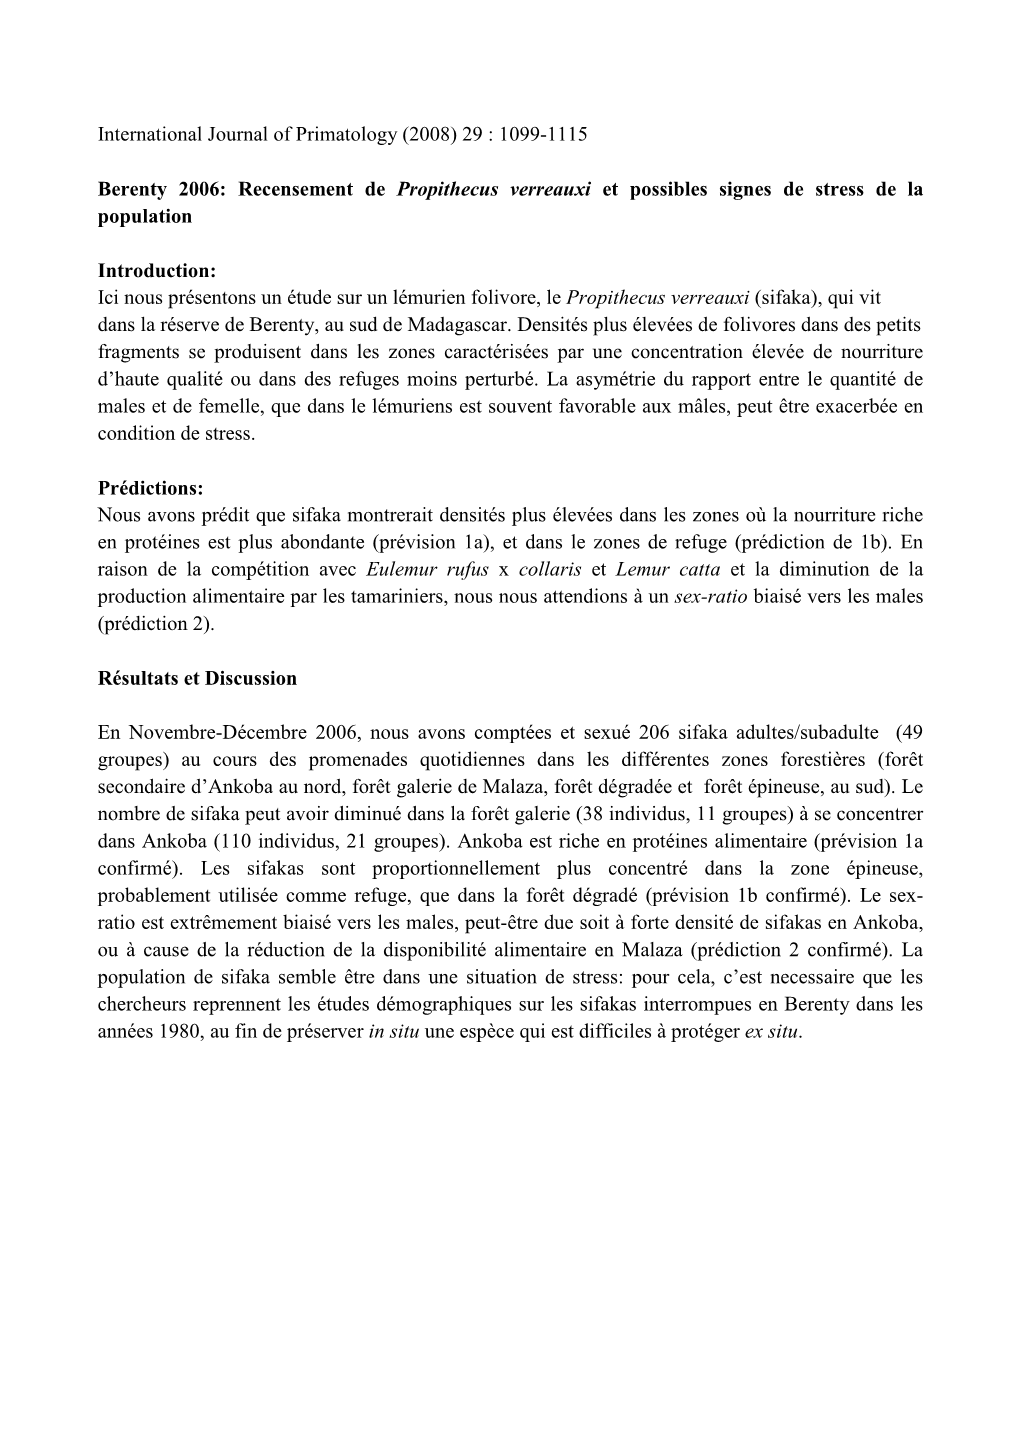 International Journal of Primatology (2008) 29 : 1099-1115 Berenty 2006: Recensement De Propithecus Verreauxi Et Possibles Signe